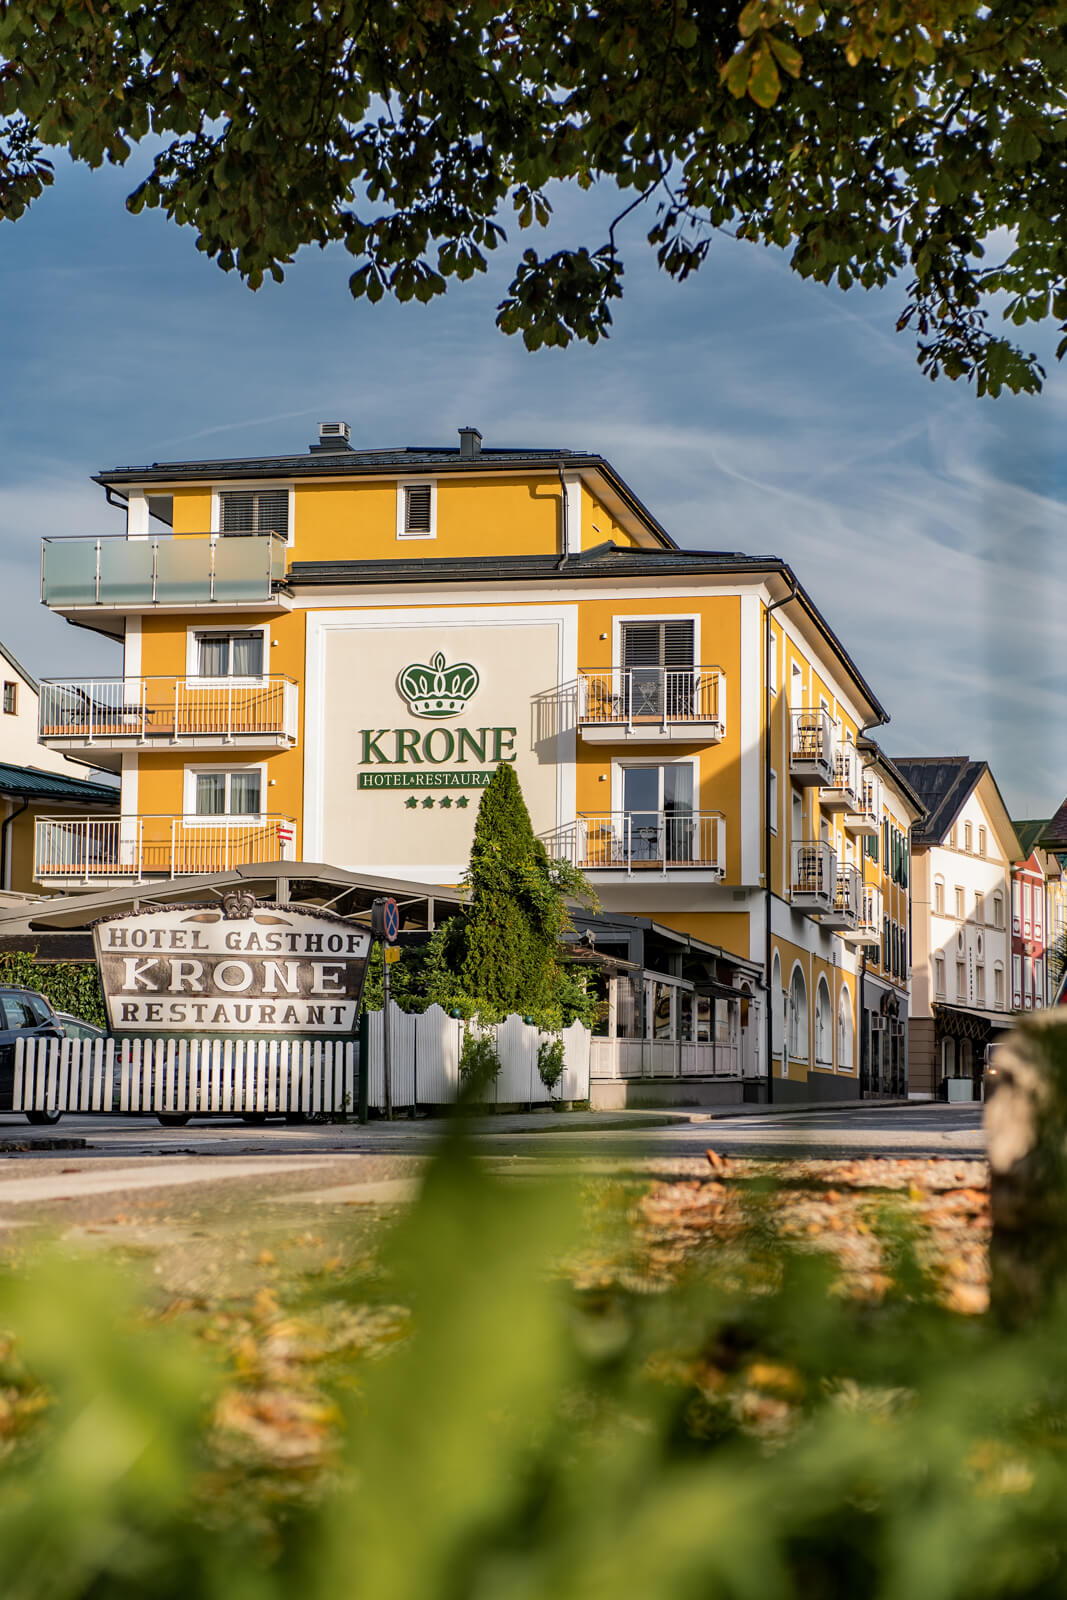 Aussenansicht kinderfreundliches Hotel & Restaurant Krone in Mondsee.